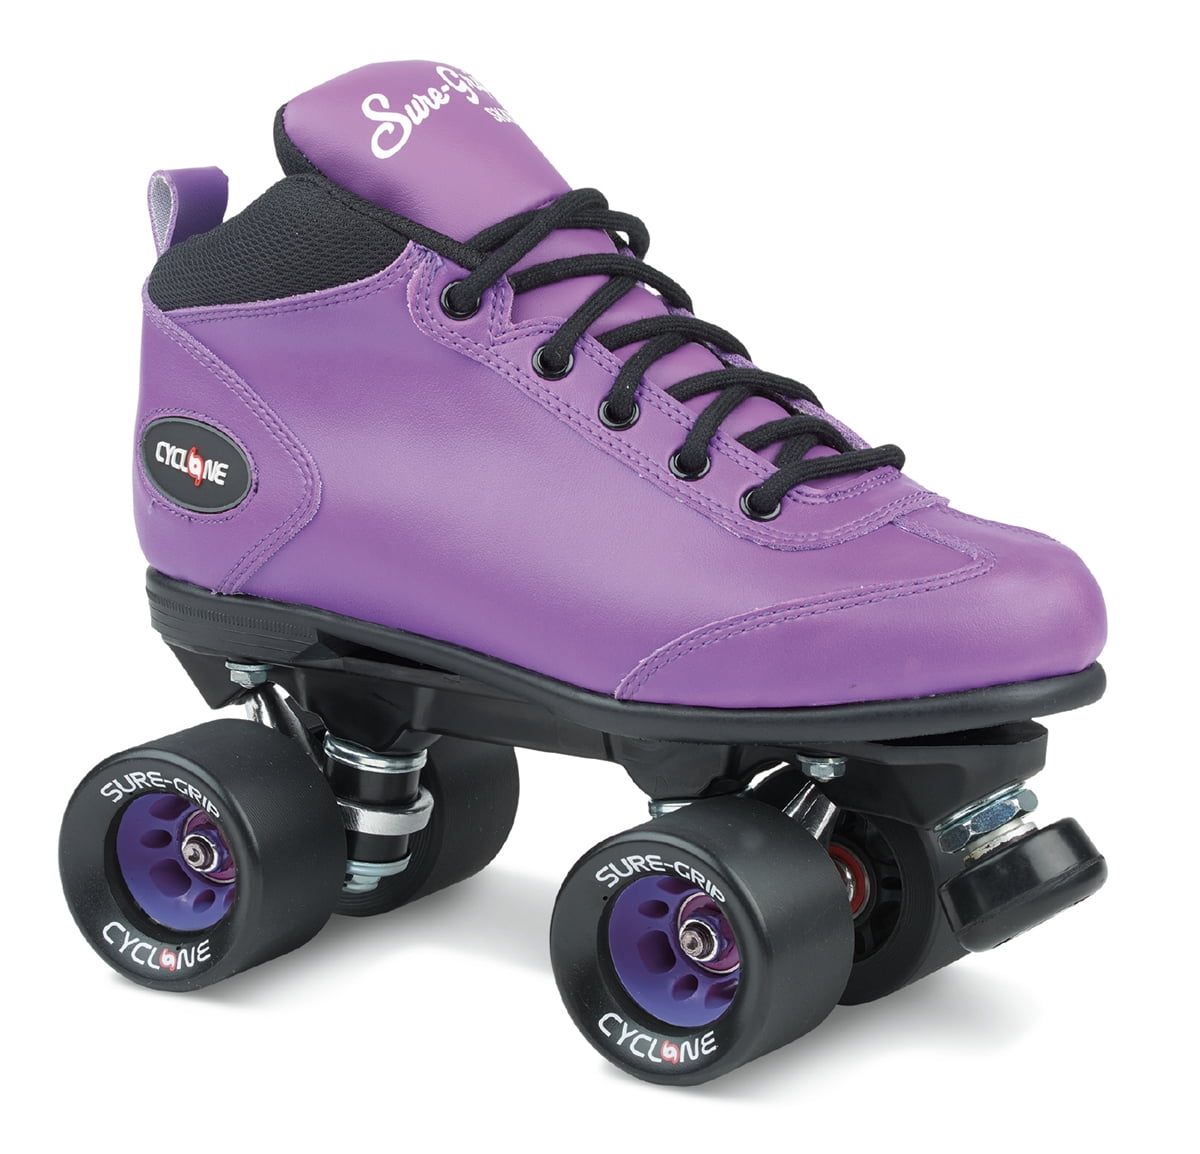 Purple Roller Skate. Ролики California Pro. Ролики California Pro на шнурках. Ролики California Pro описание.